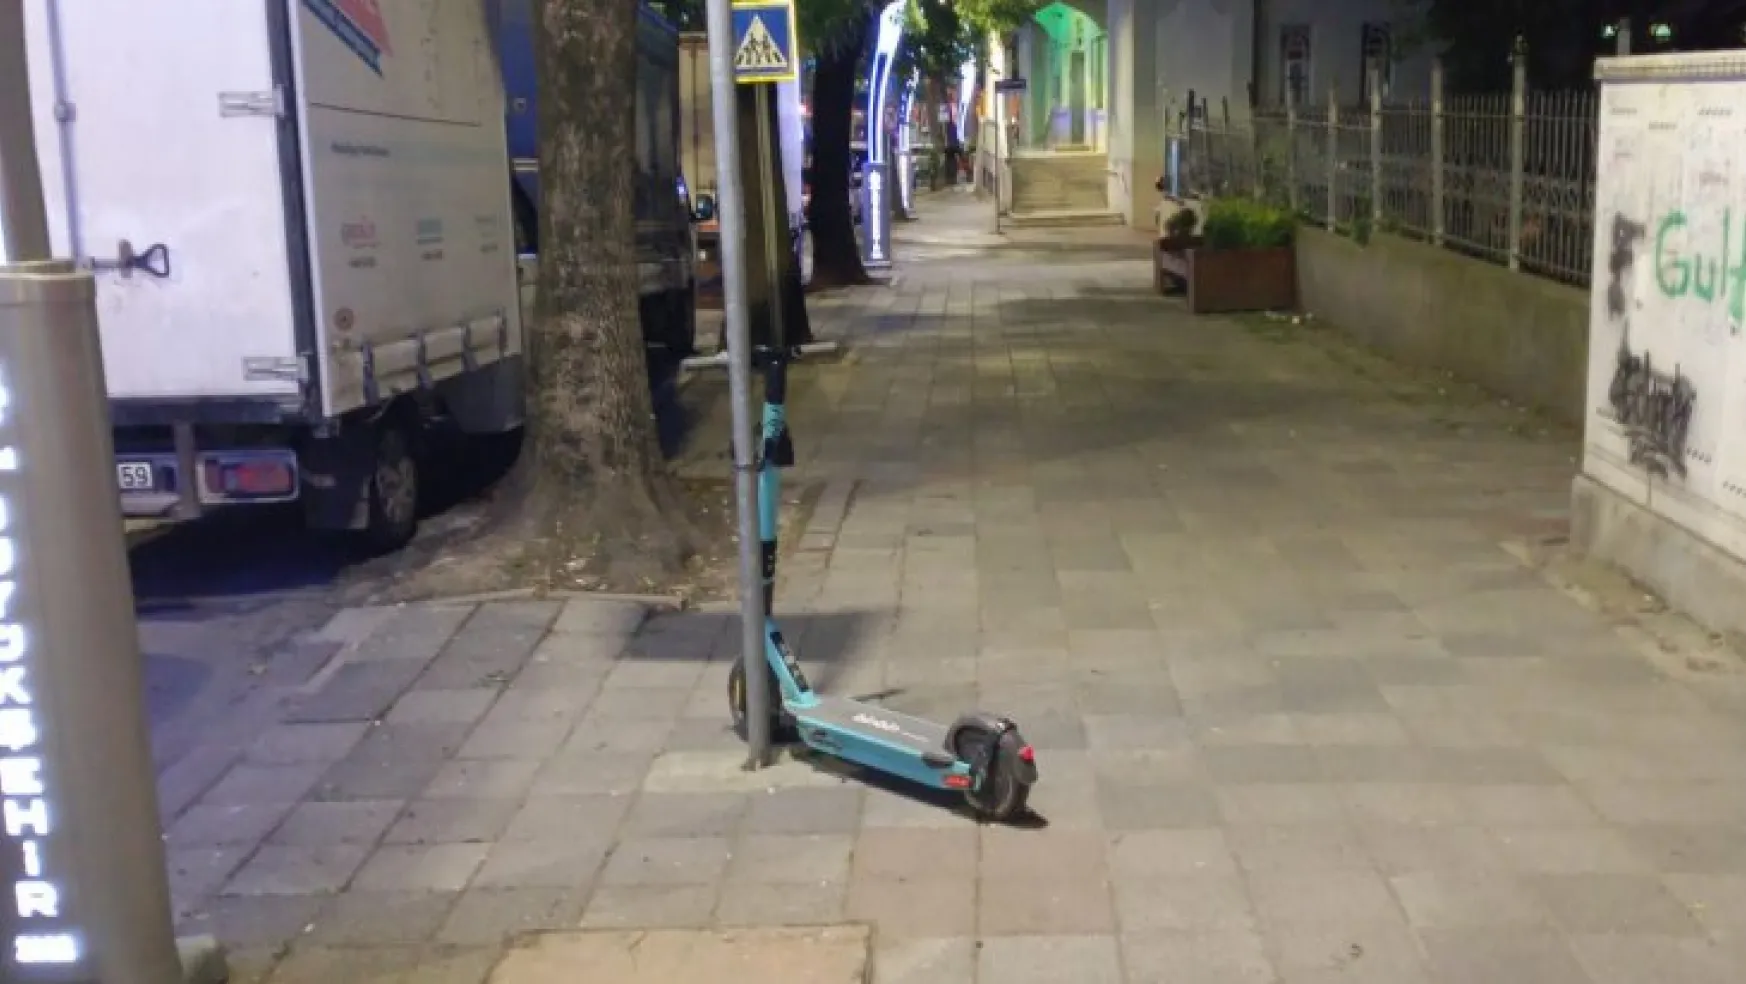 Rastgele bırakılan elektrikli scooterlar tehlike saçıyor!